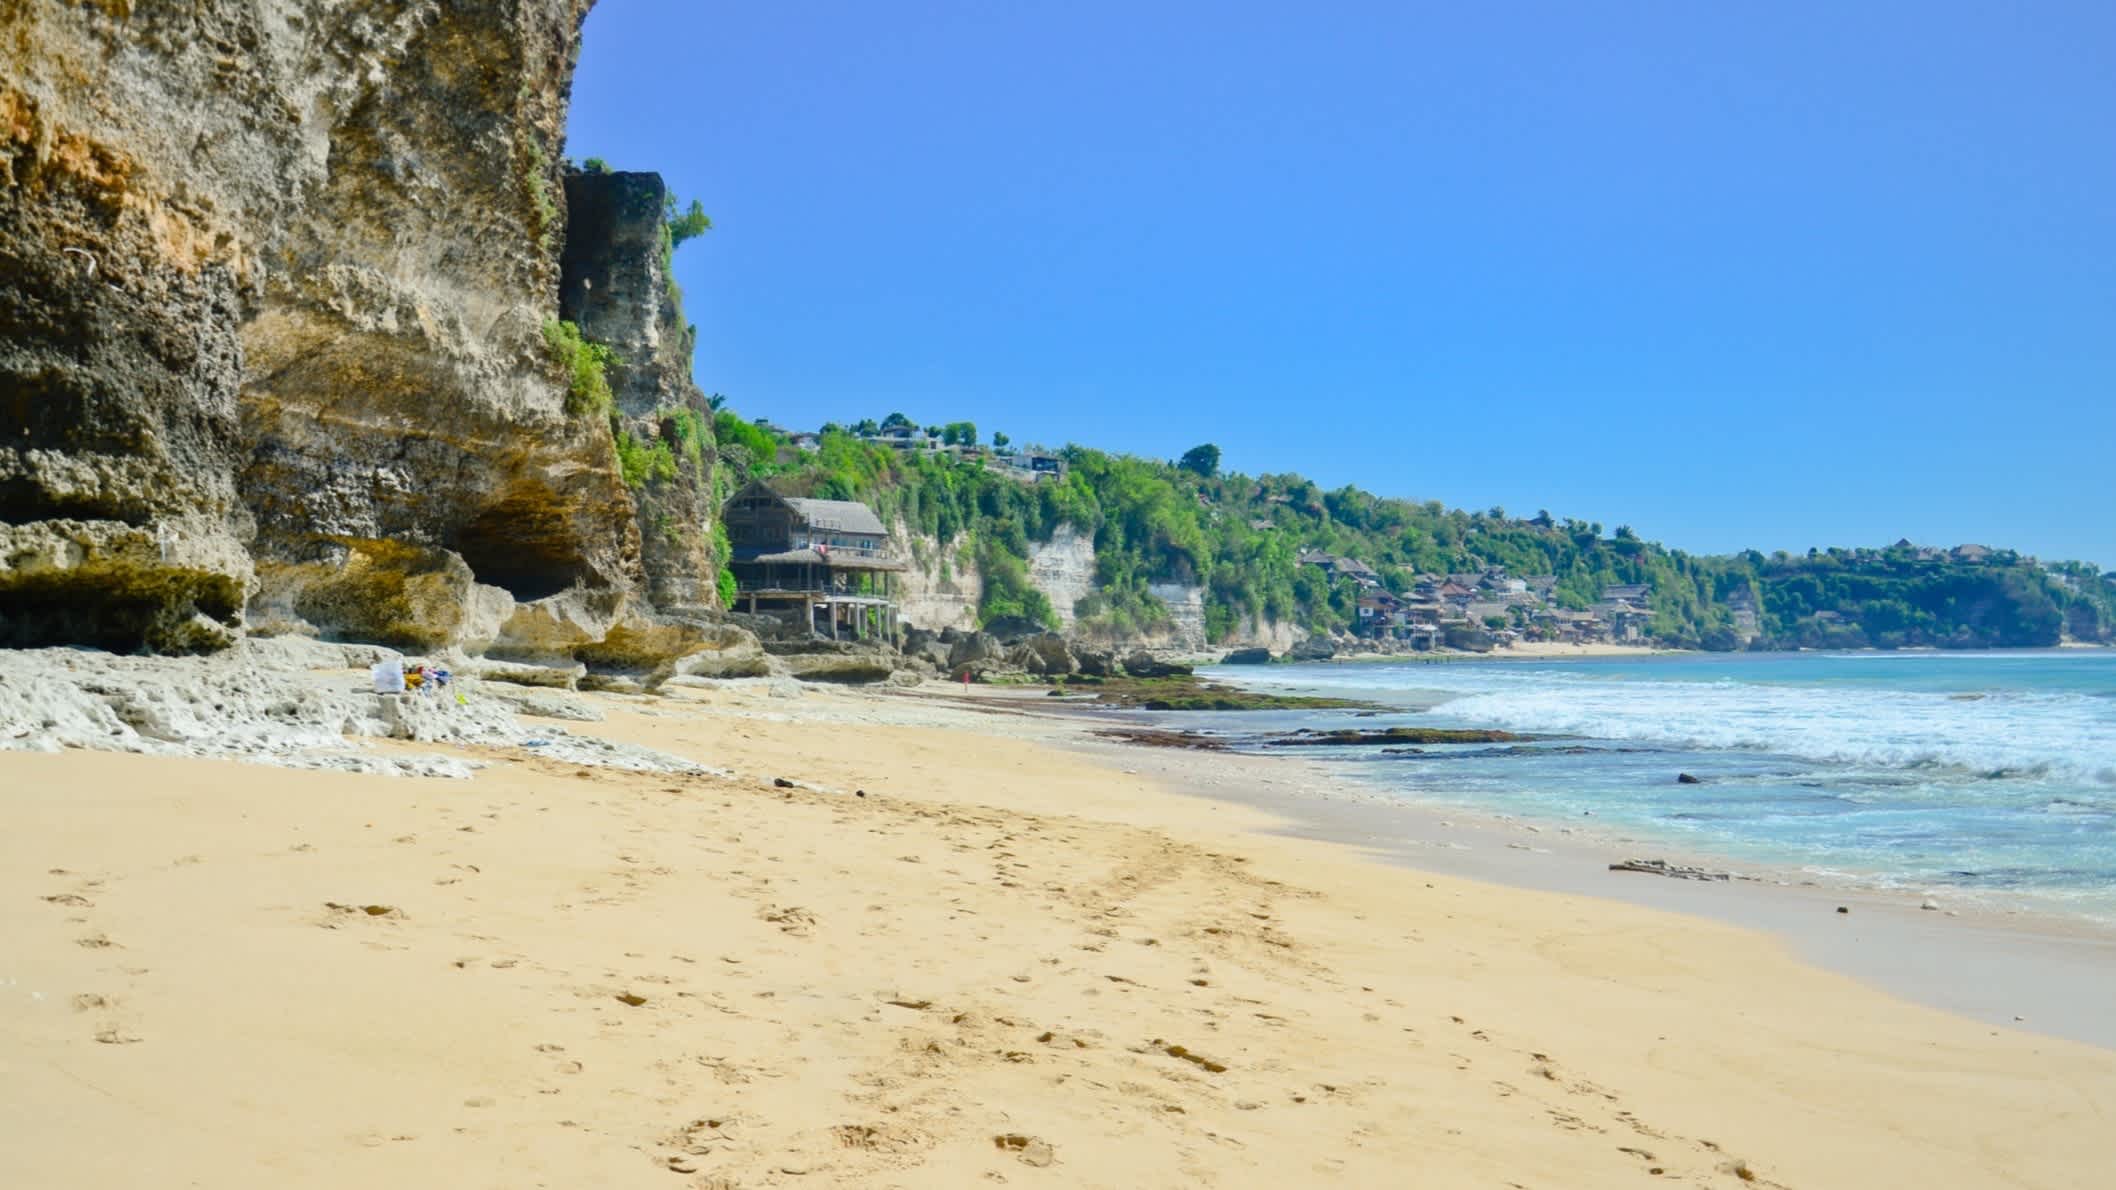 Plage bordée de rochers verdoyants à Dreamland Beach à Bali, en Indonésie.